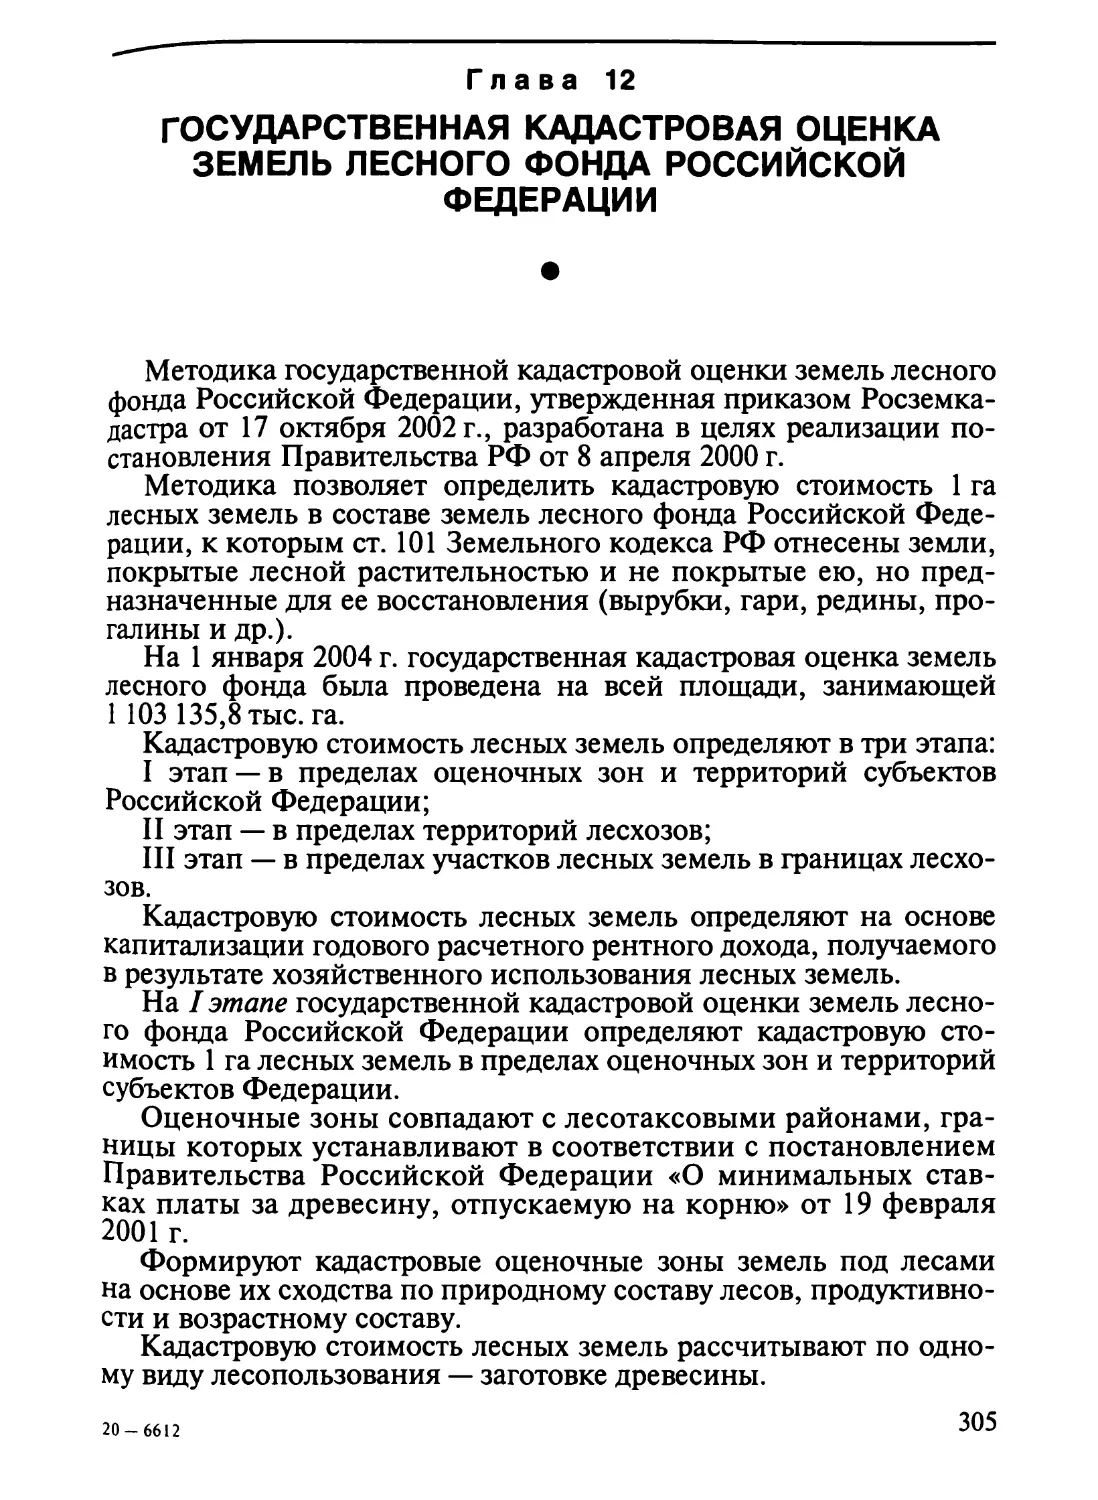 Глава 12. Государственная кадастровая оценка земель лесного фонда Российской Федерации